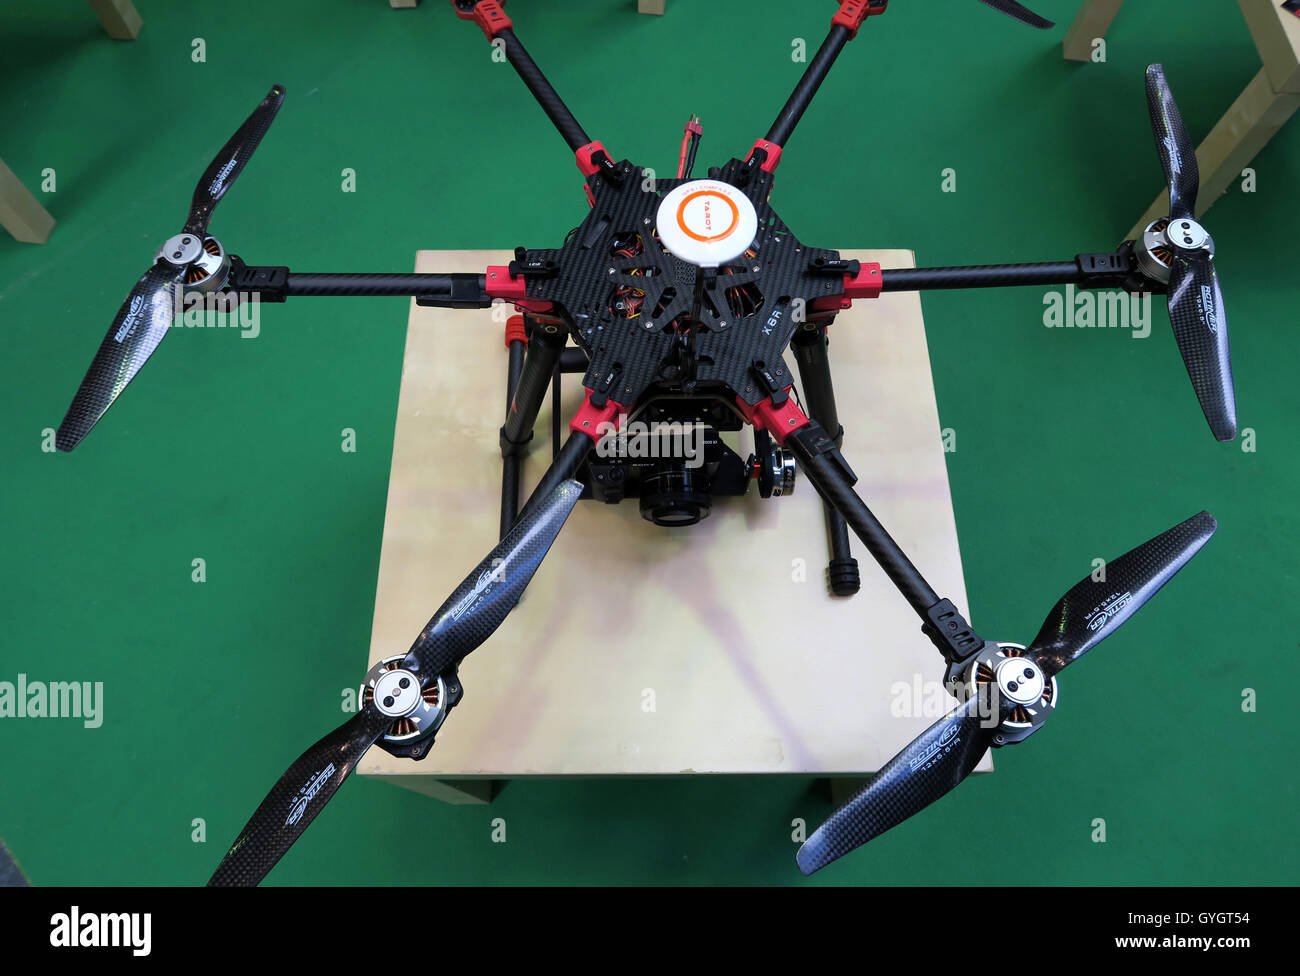 Drone UAV racing, Drone mostrar, París, Francia Fotografía de stock - Alamy